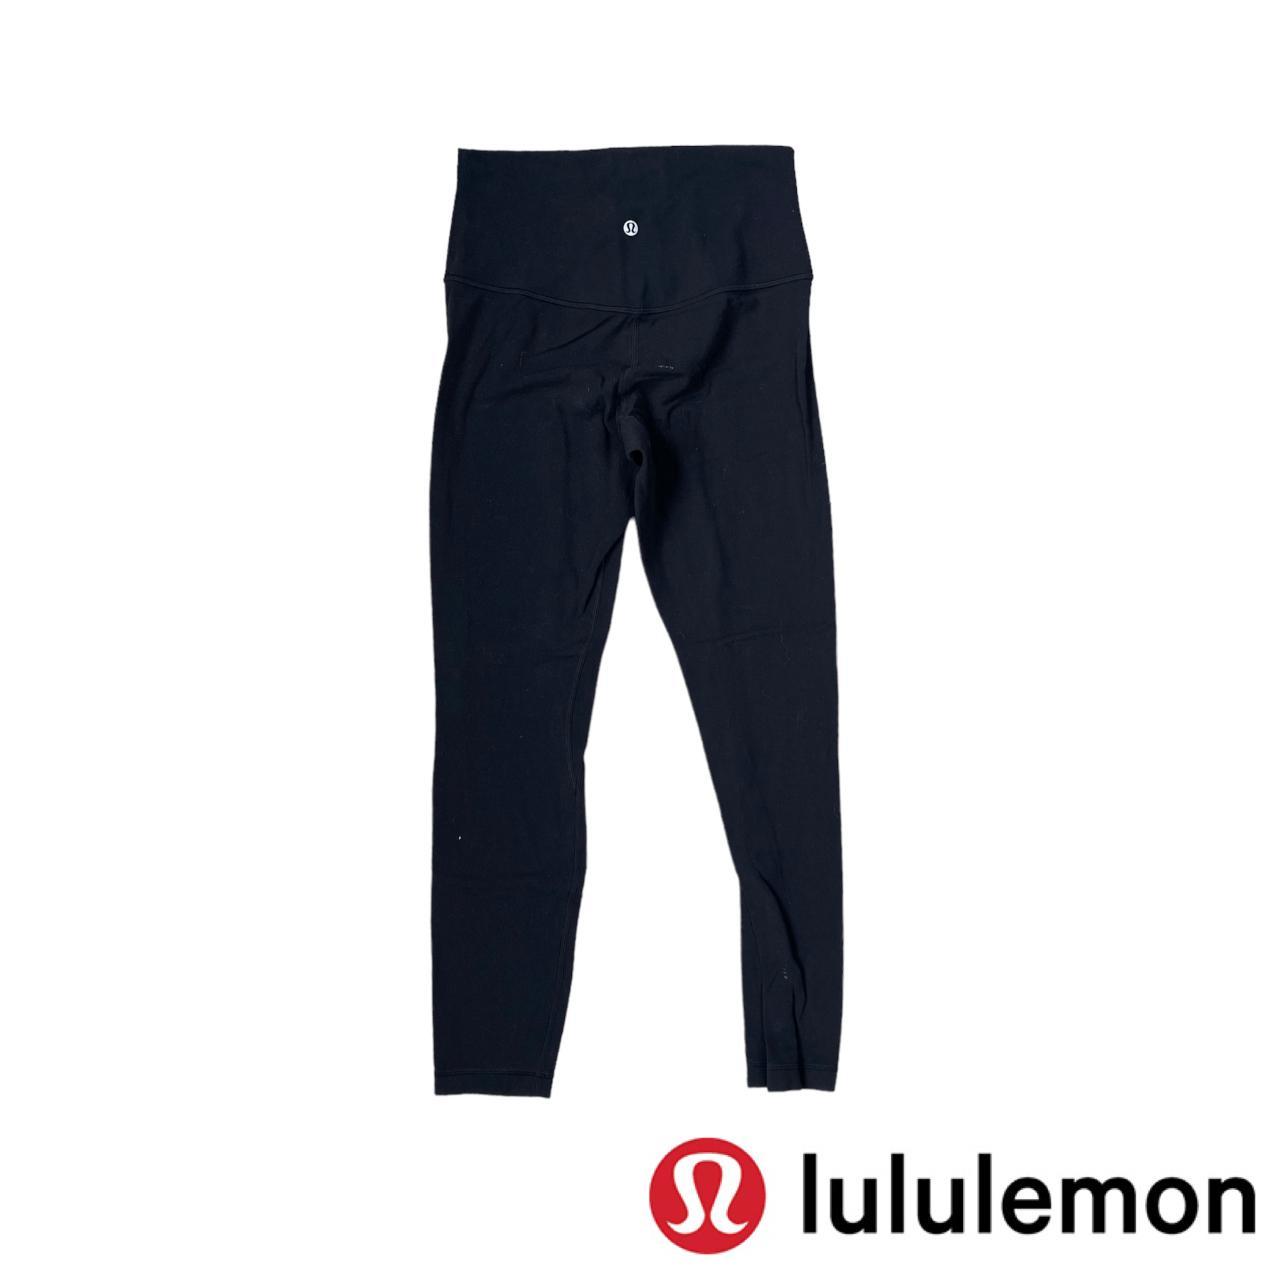 Lululemon Align Pant II *25 Black Like new These - Depop